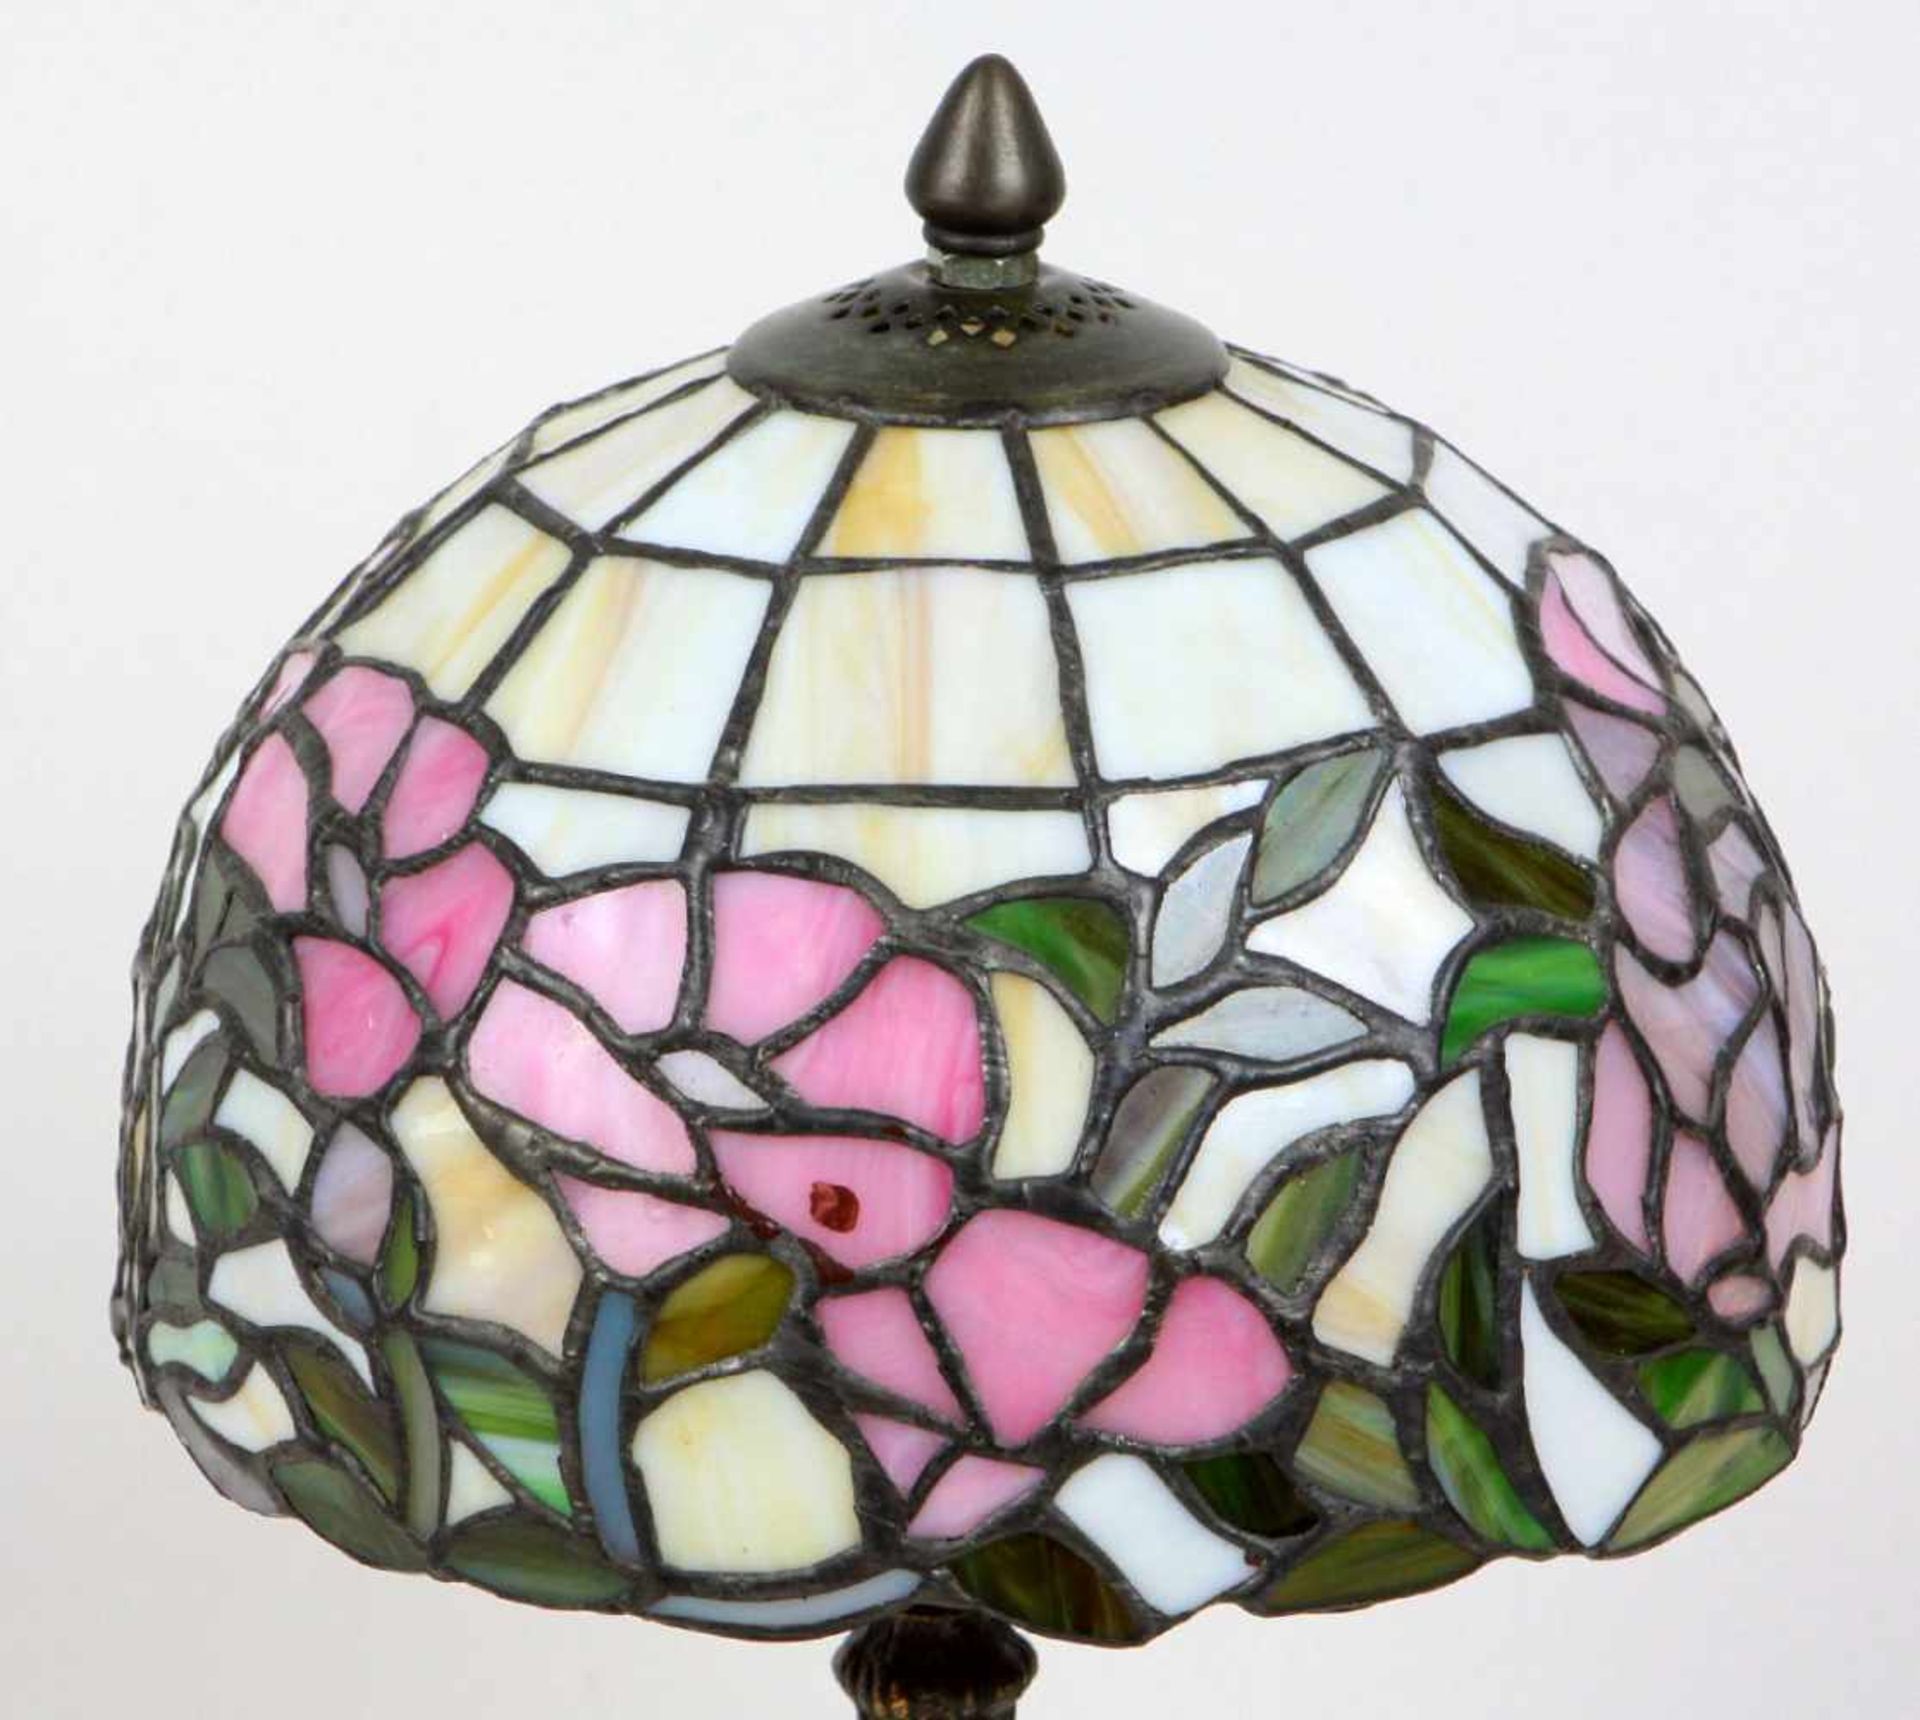 Tischlampe Tiffany Stilrunder Lampenschirm mit verschieden farbigen Flächen mit Blüten u. - Bild 2 aus 3